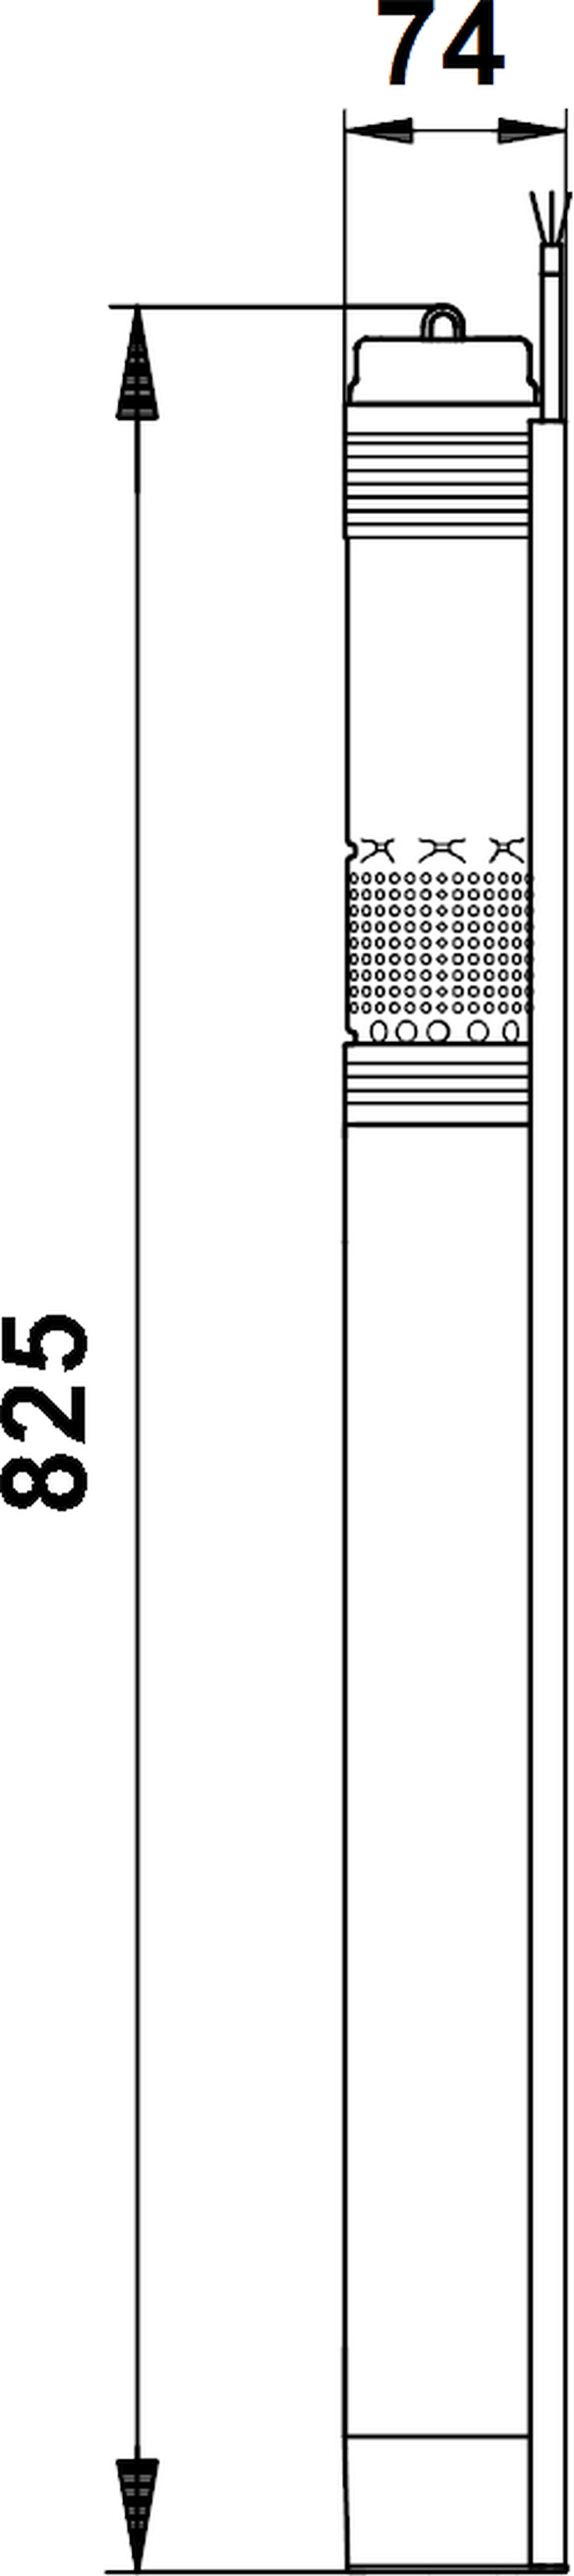 Grundfos SQ 1-80 (96510191) Габаритные размеры